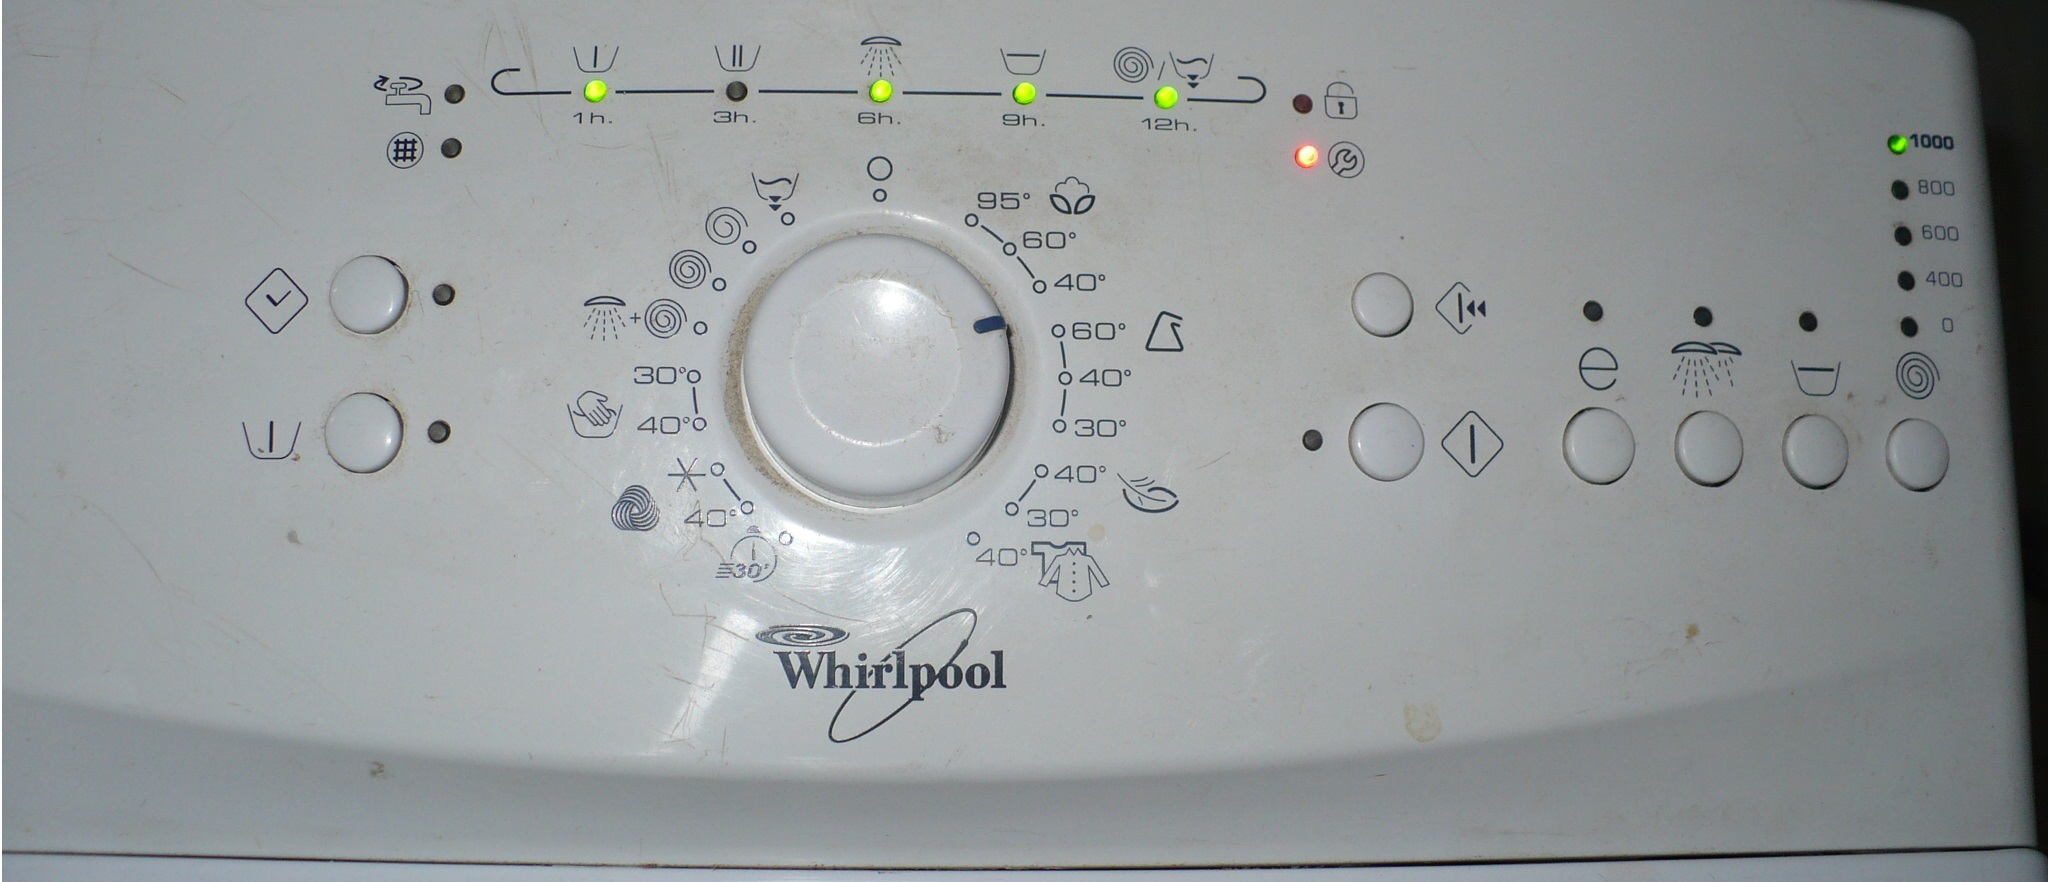 โปรแกรมเสริม Whirlpool